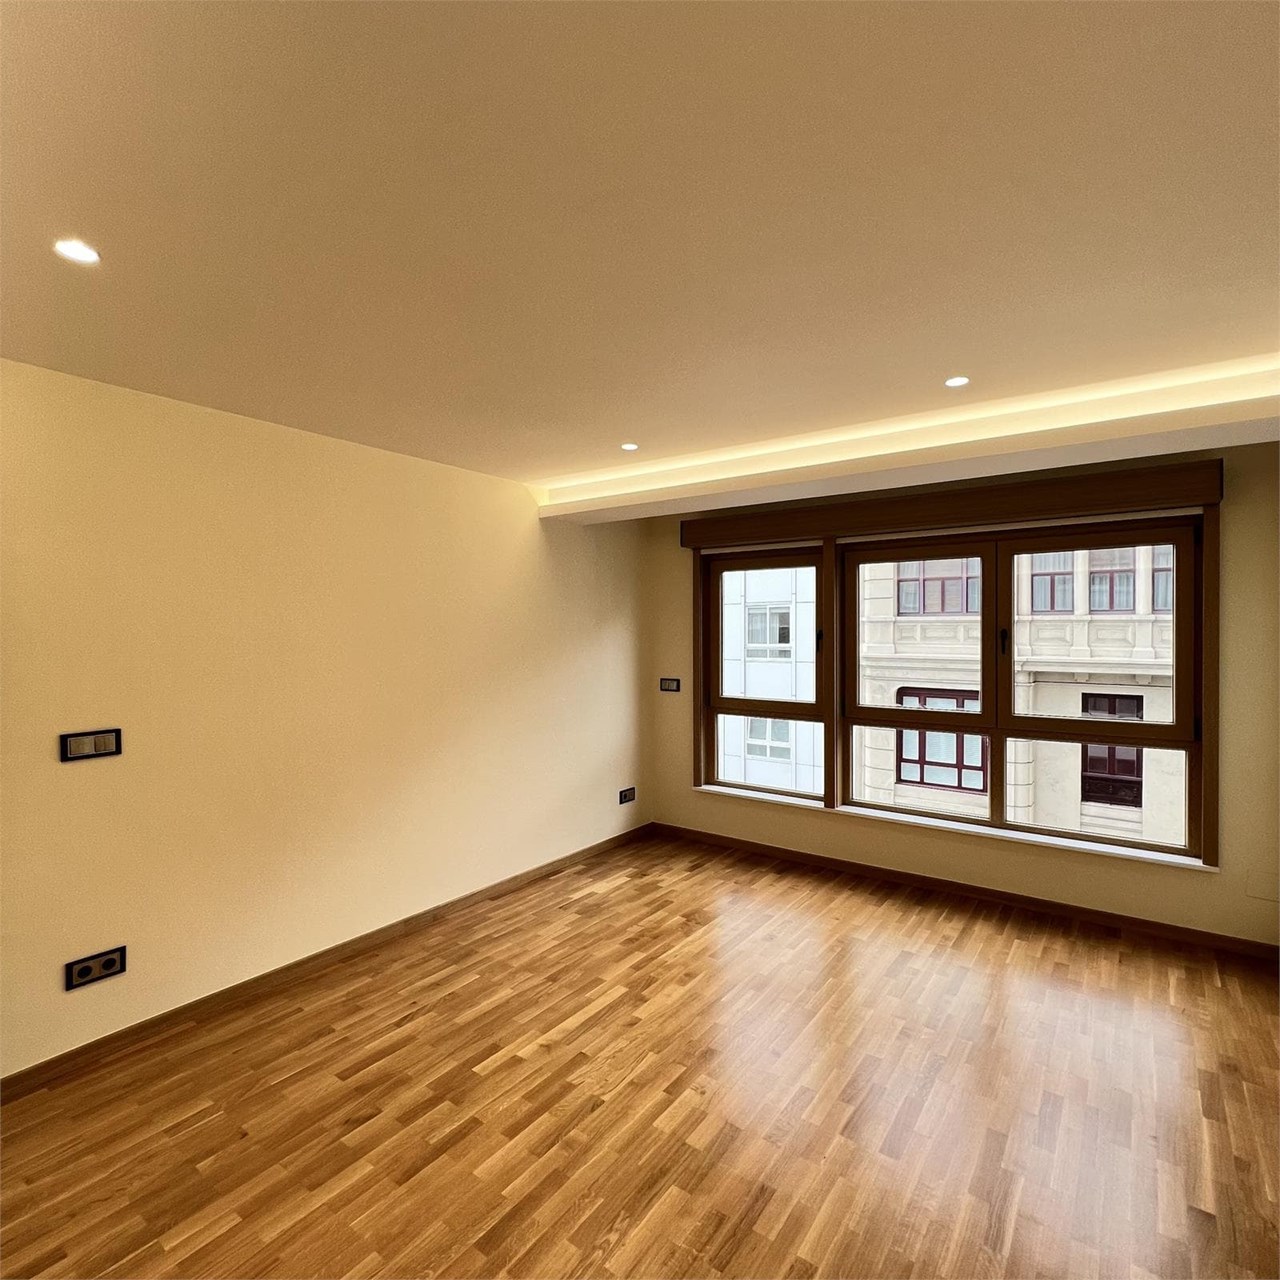 Foto 1 Apartamento en Teresa Herrera, ubicado en el Ensanche de A Coruña